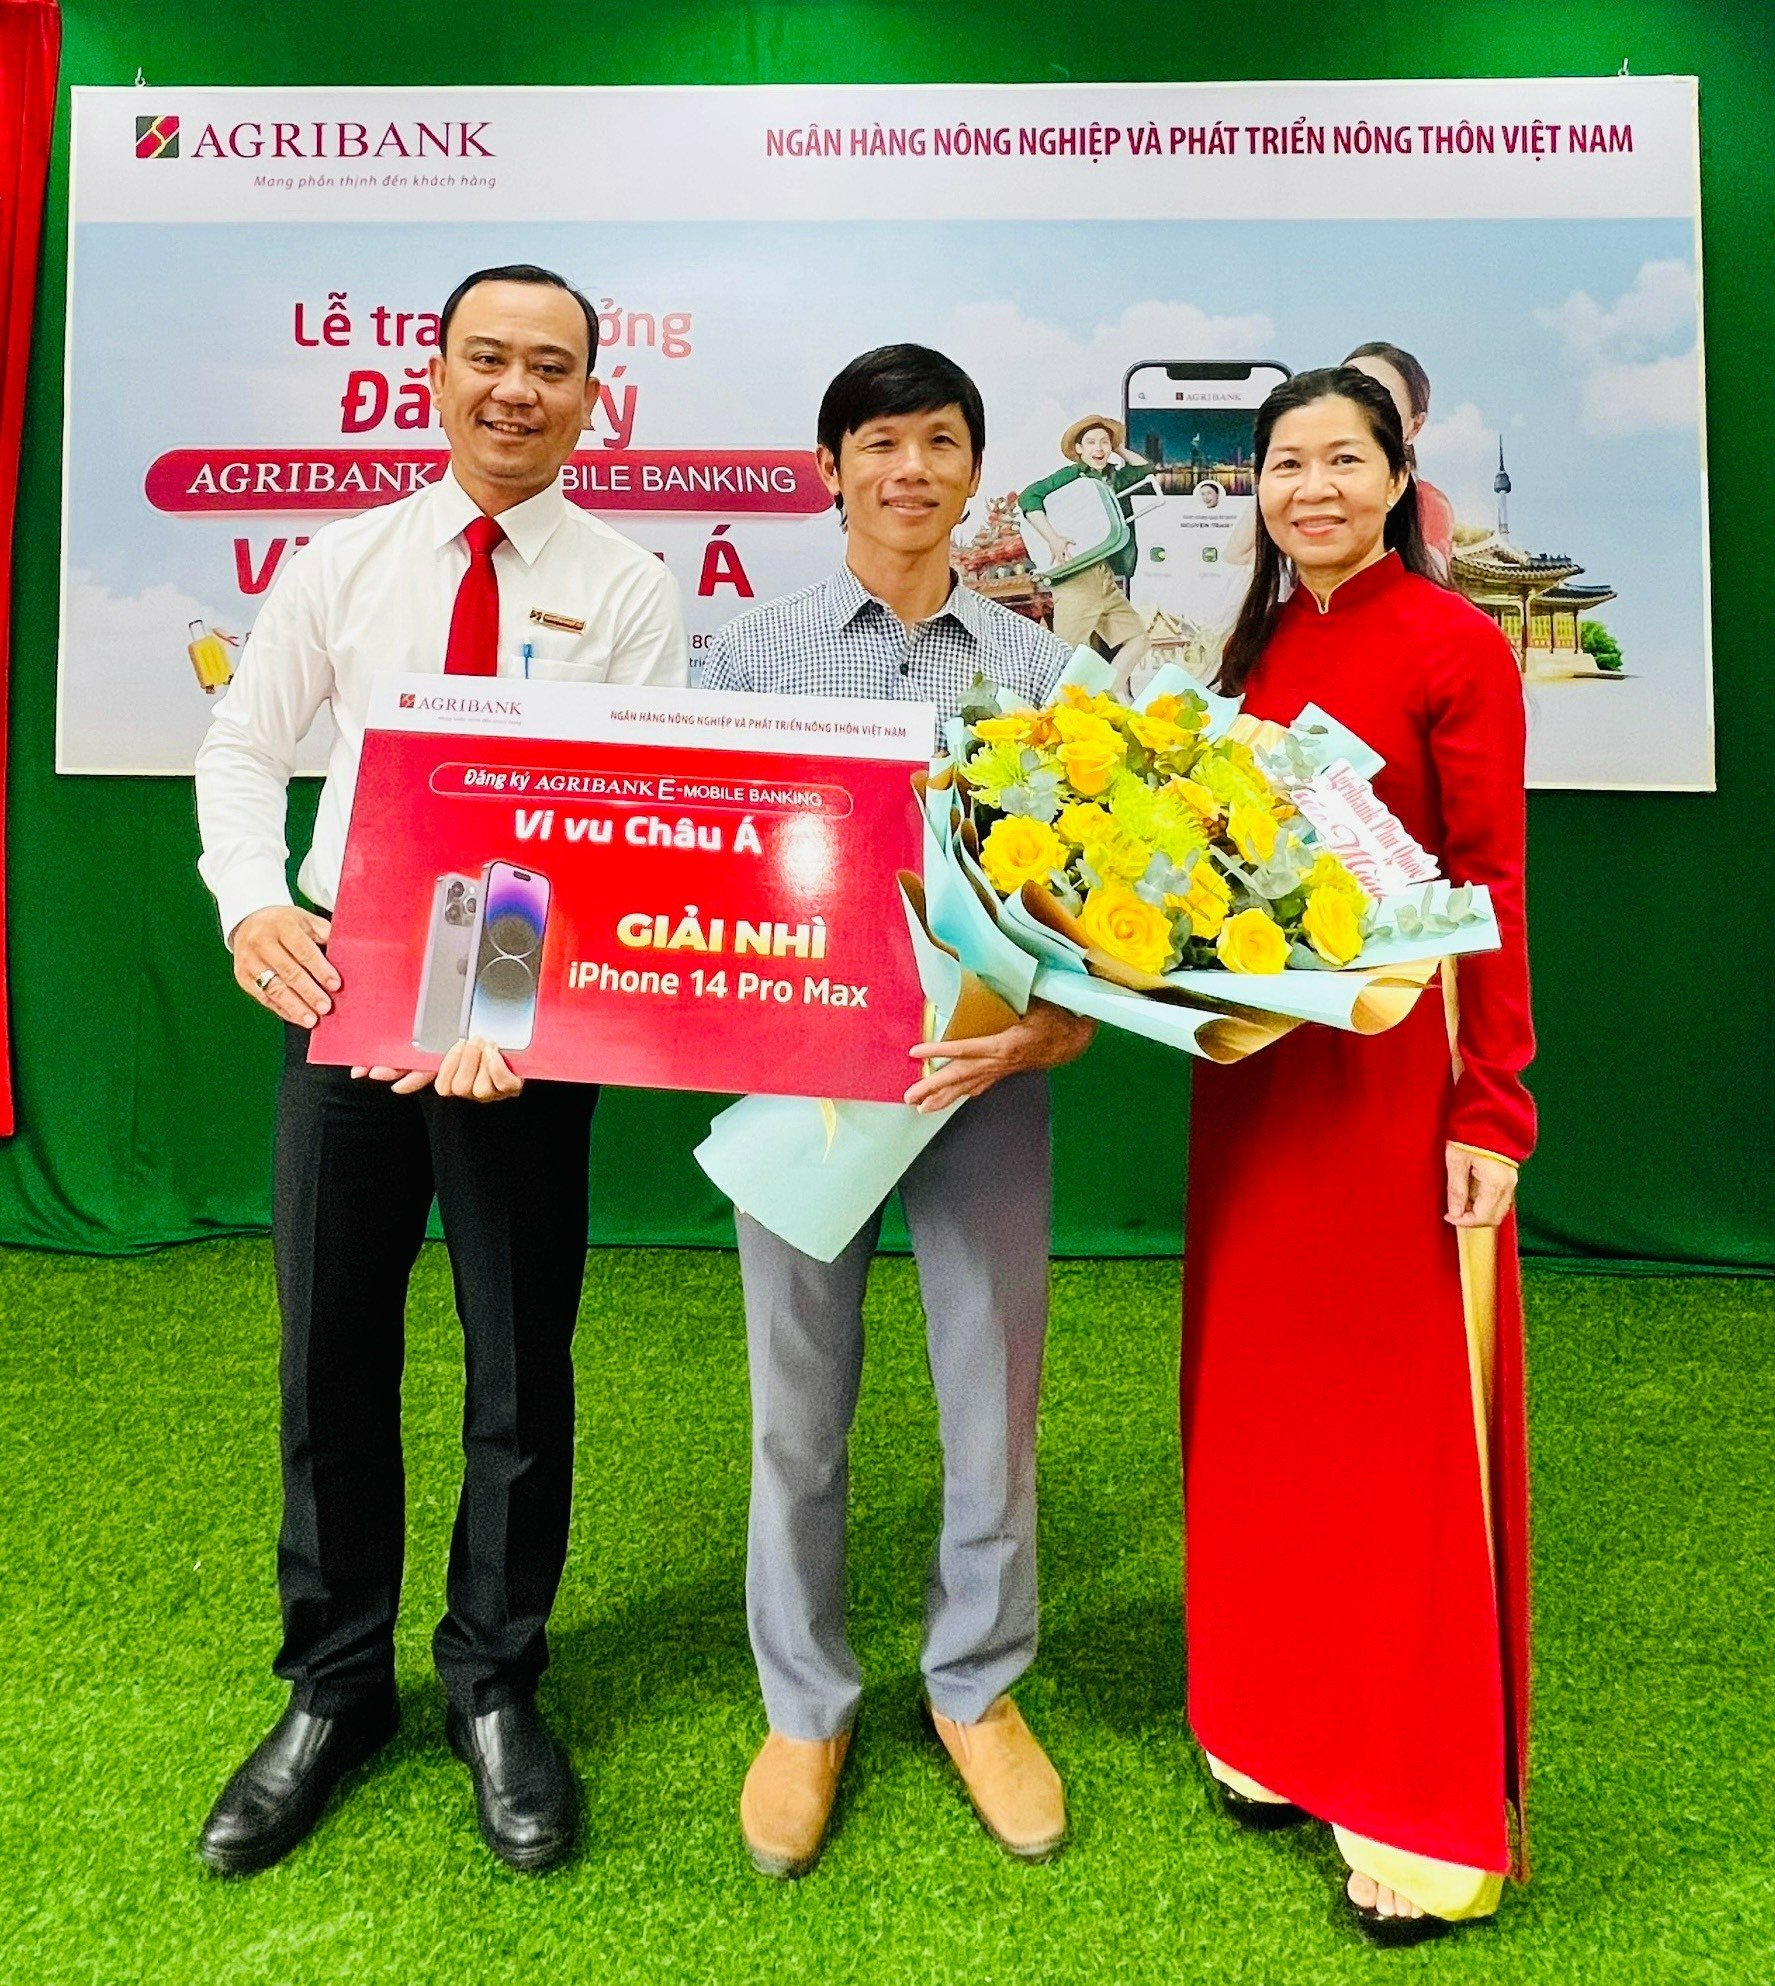 Agribank Phú Quốc trao thưởng cho khách hàng trúng giải Nhì chương trình &quot;Đăng ký Agribank E-Mobile Banking – Vi vu Châu Á&quot; - Ảnh 1.